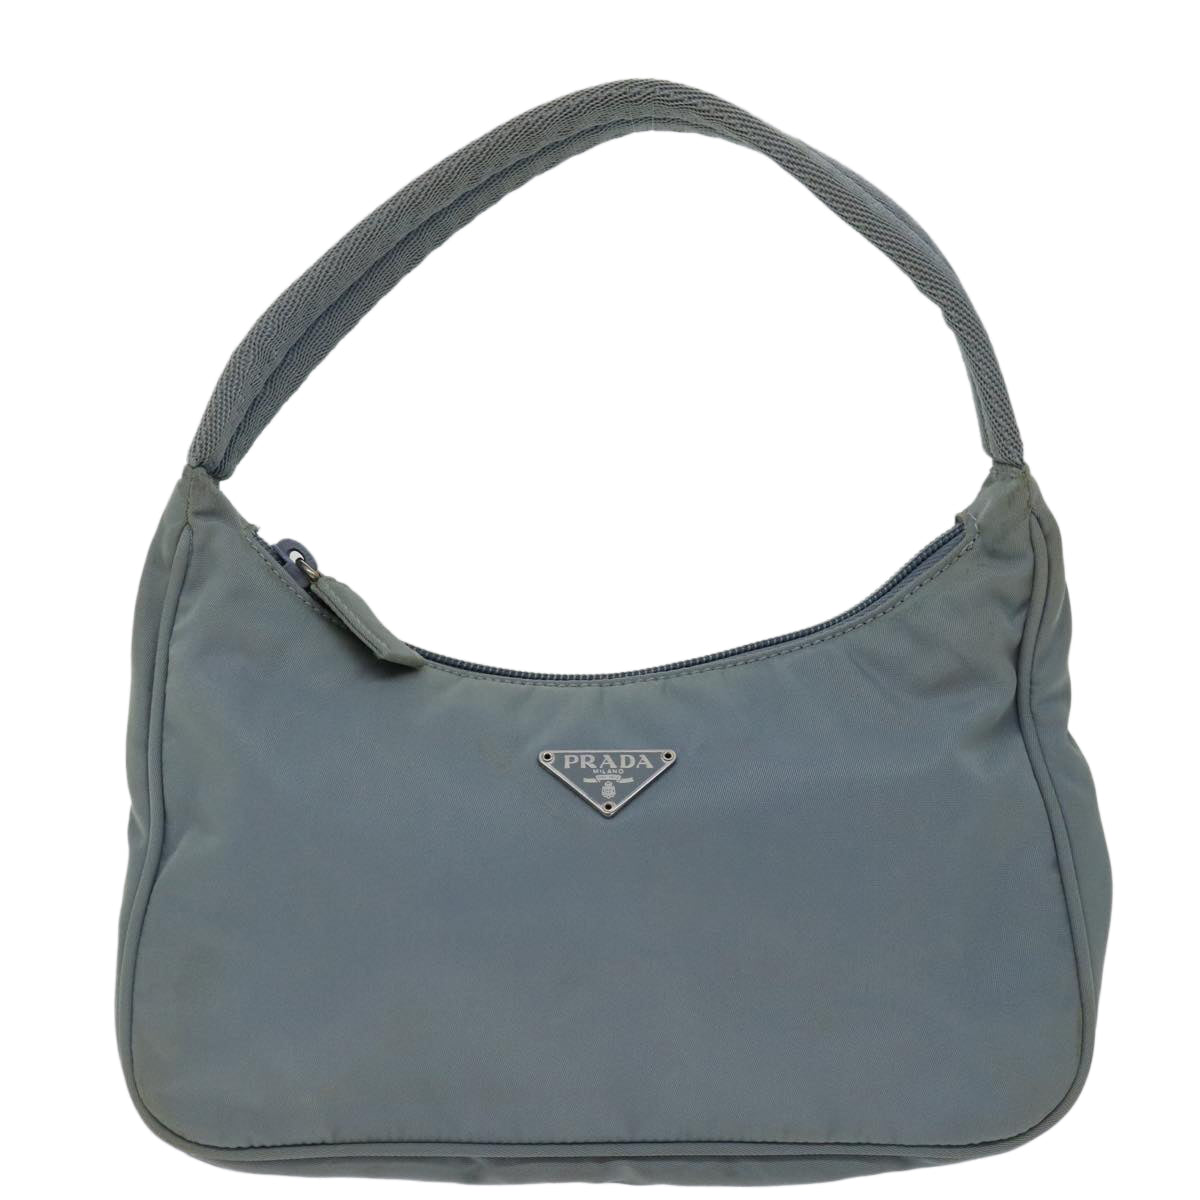 PRADA Hand Bag Nylon Light Blue Auth bs12579